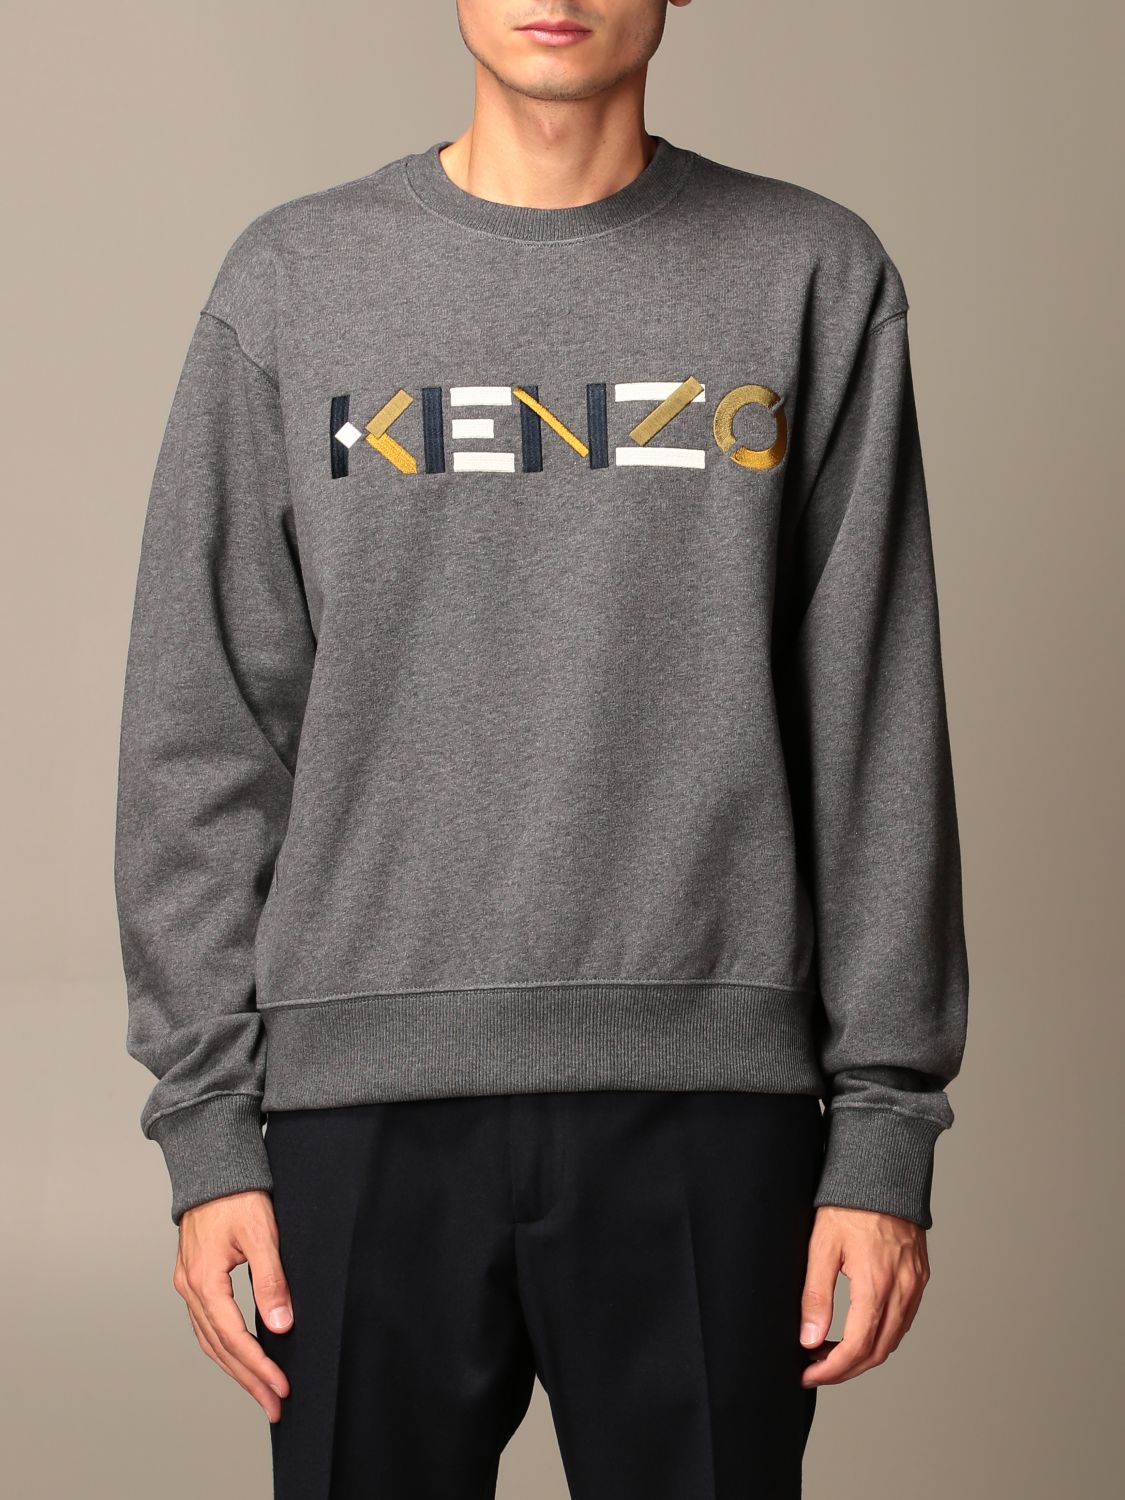 Kenzo cotton sweatshirt with color block Kenzo logo